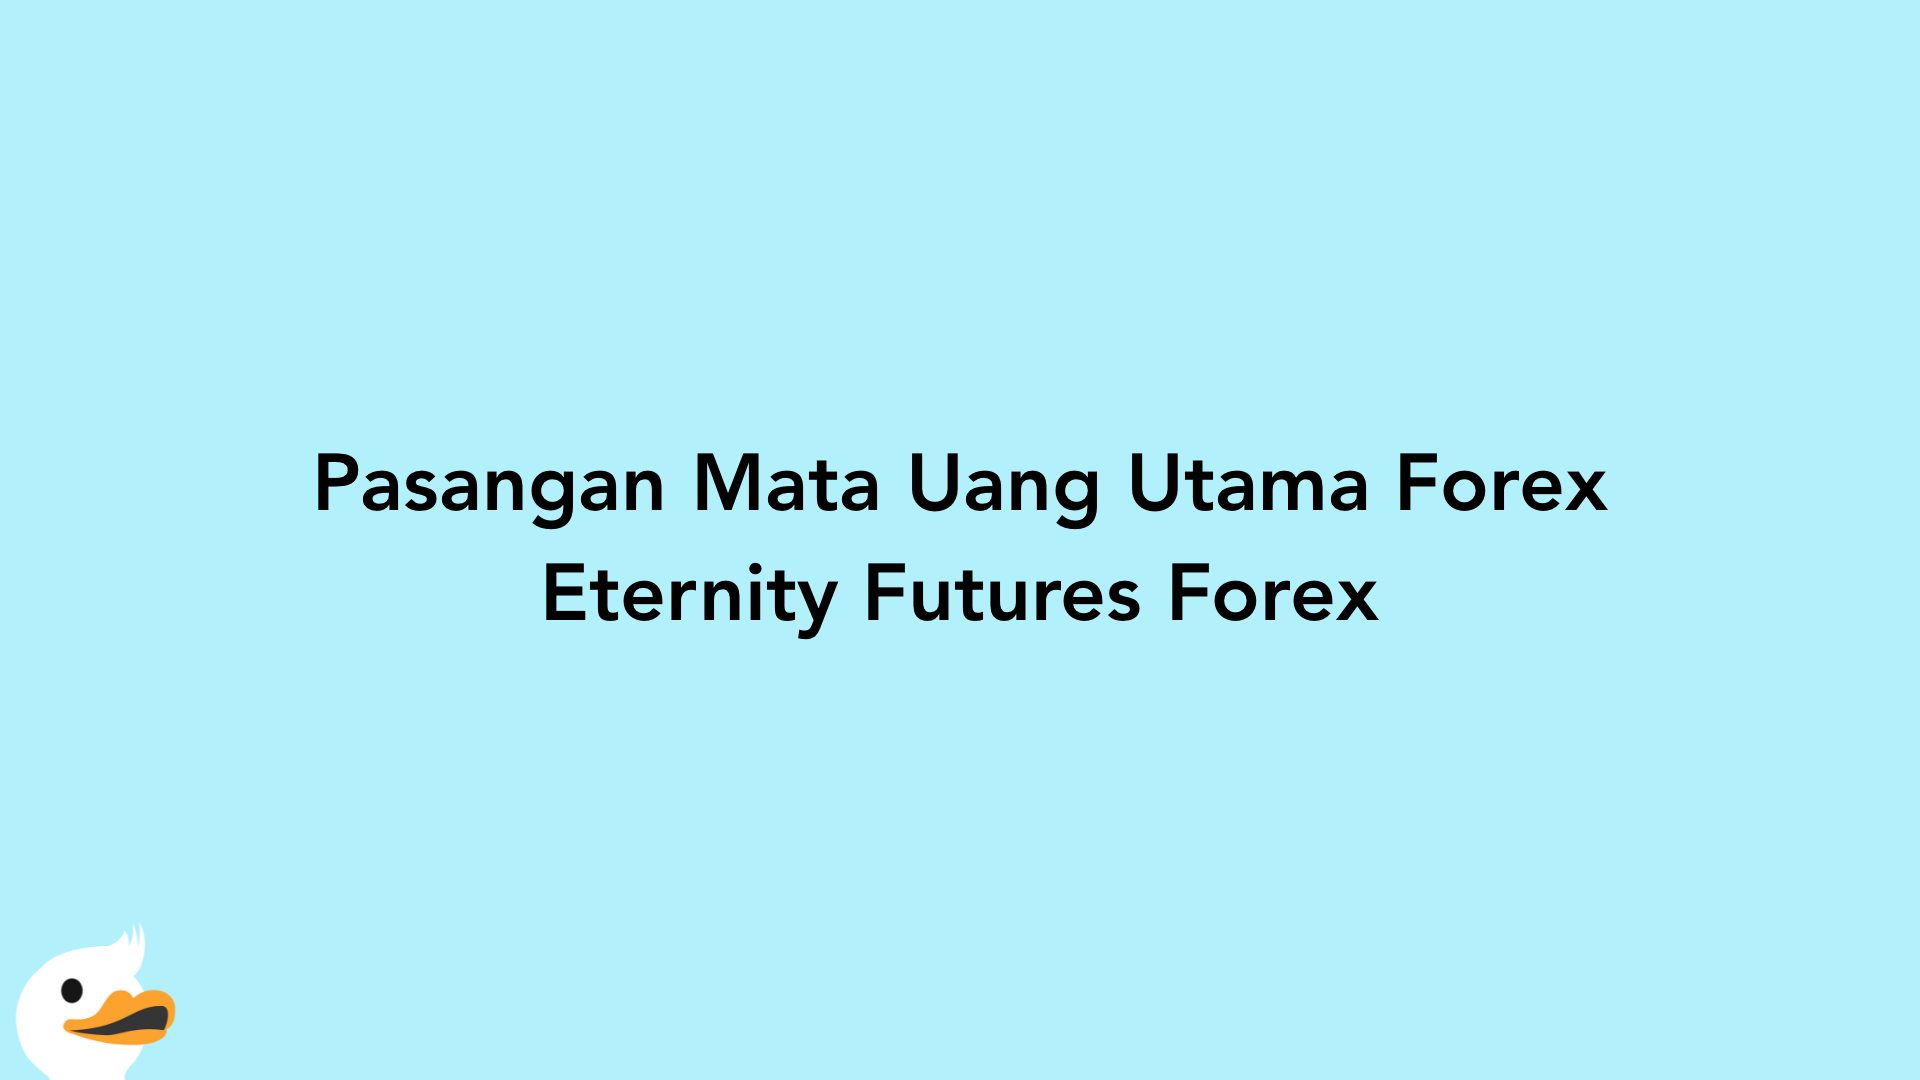 Pasangan Mata Uang Utama Forex Eternity Futures Forex